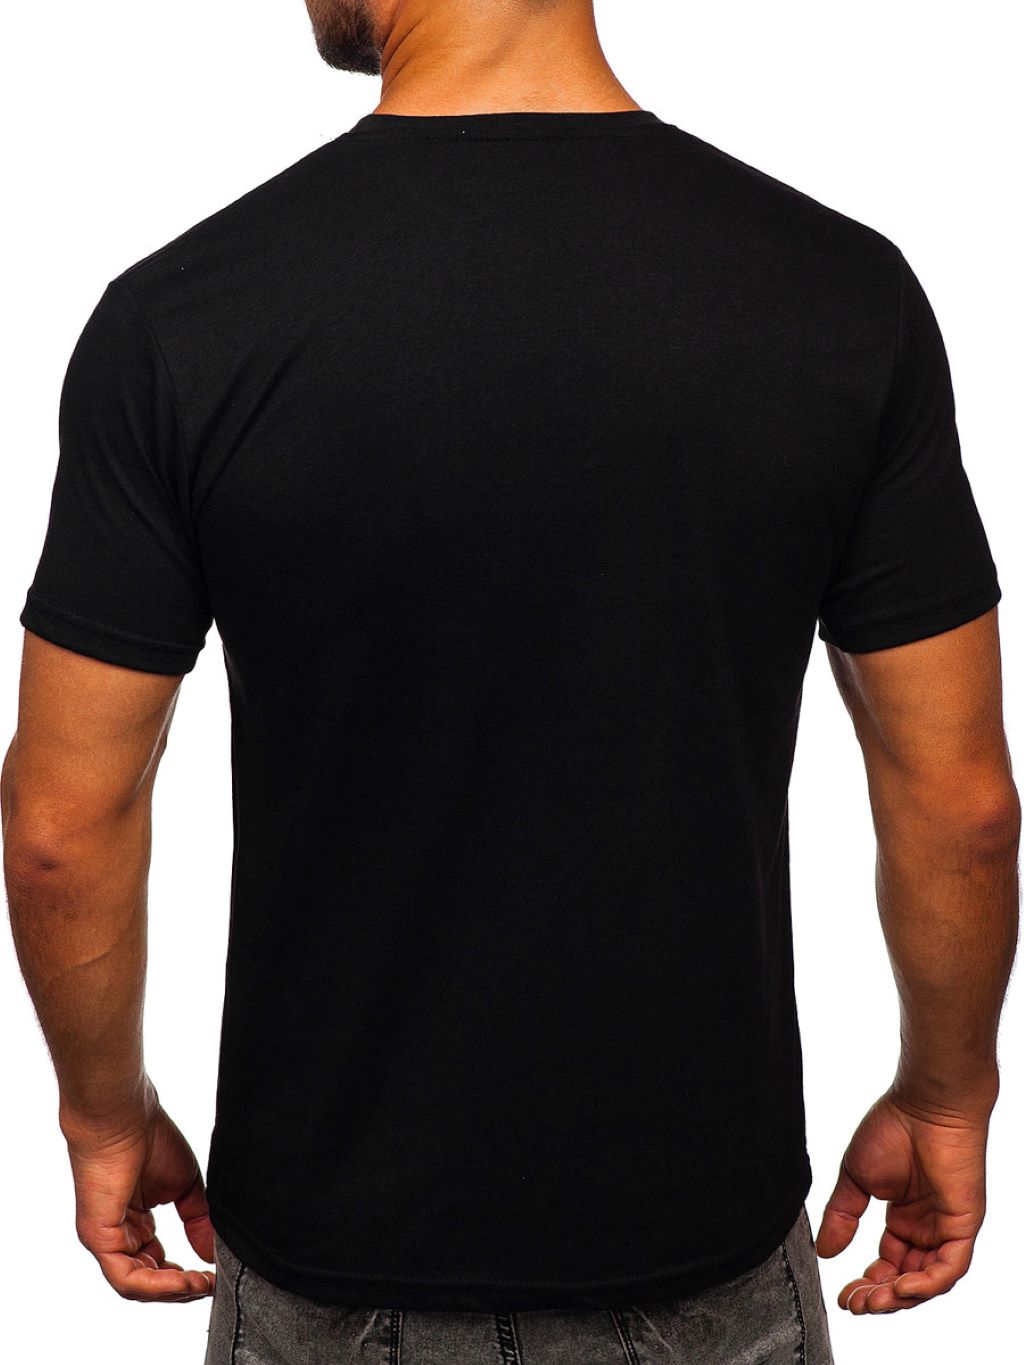 T-shirt męski z odlotowym nadrukiem zdjęcie 3